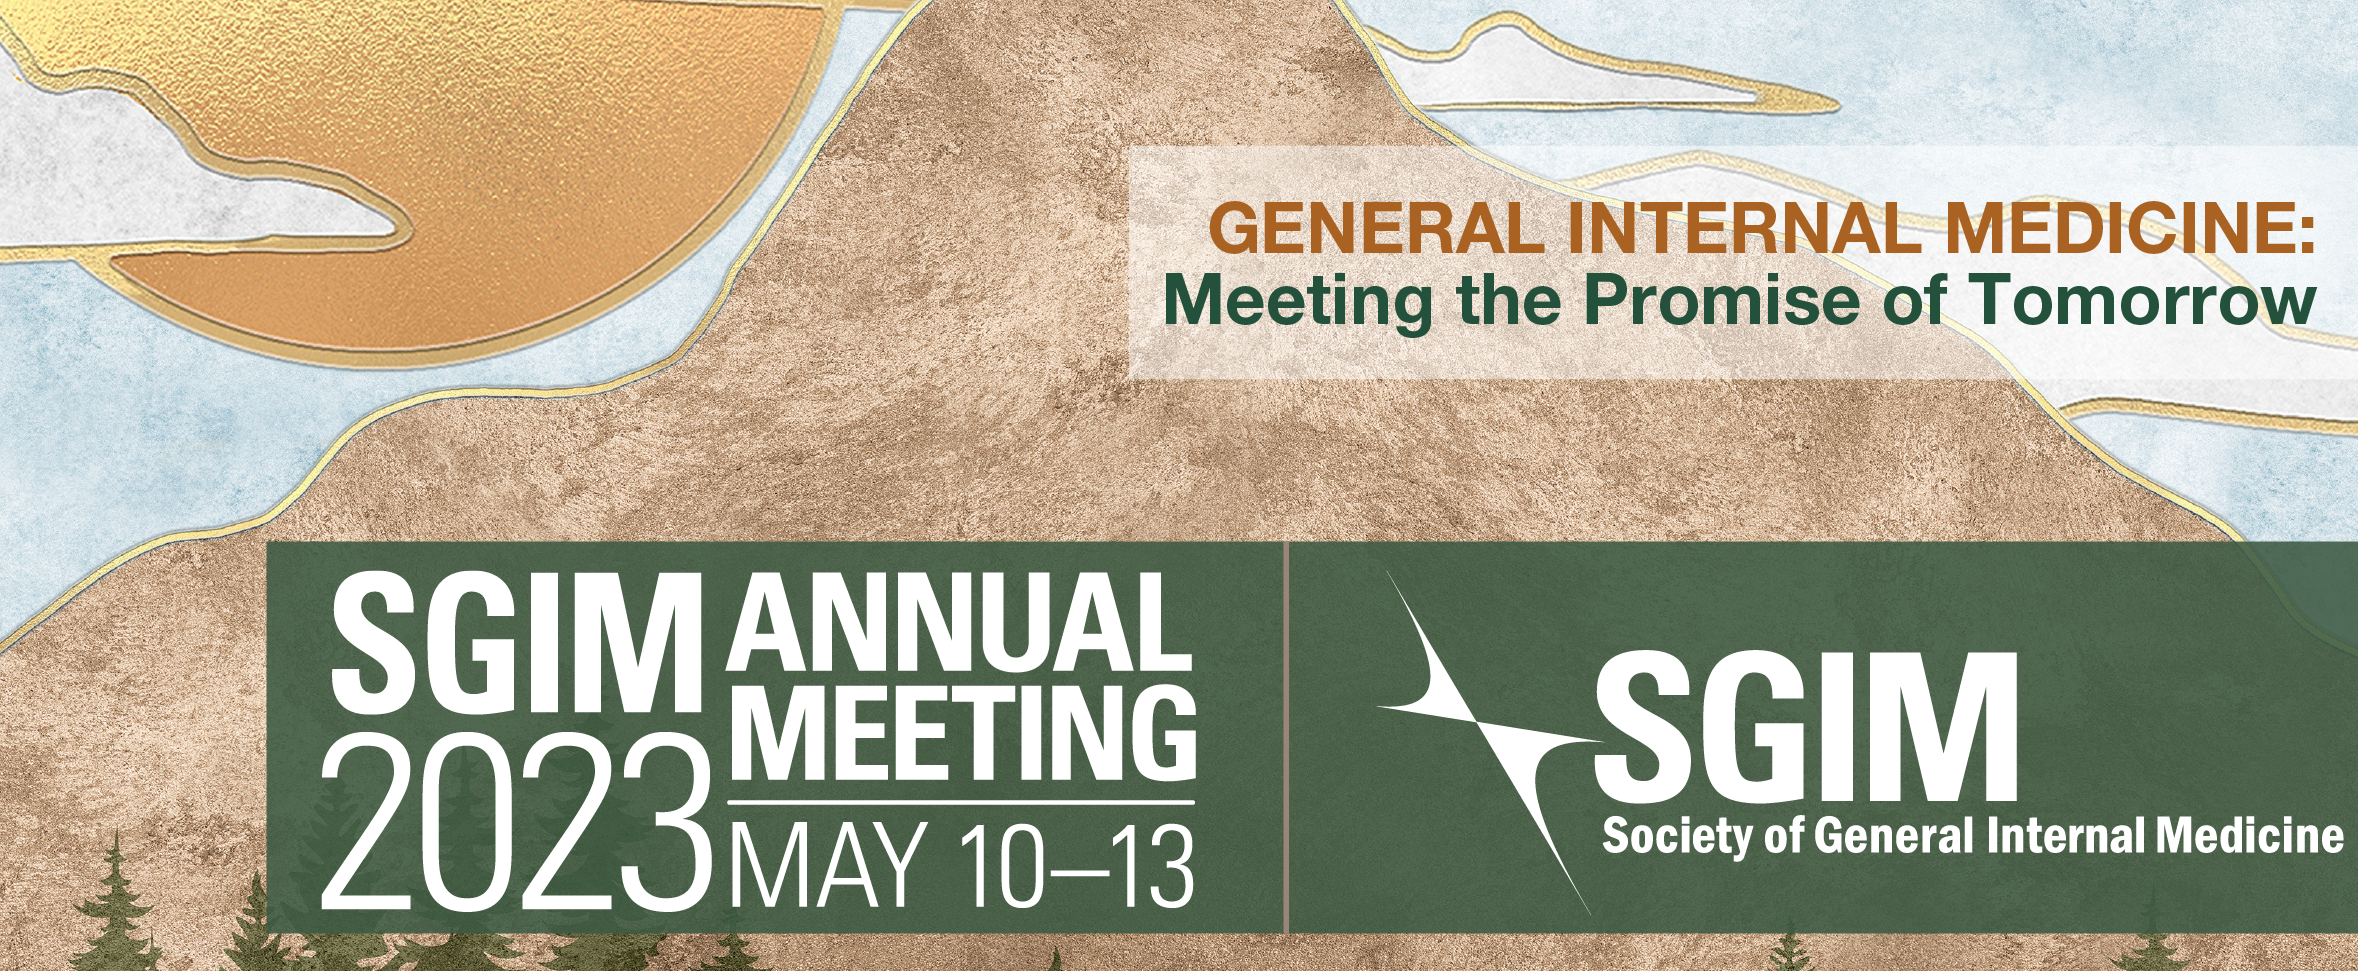 SGIM Annual Meeting 2023